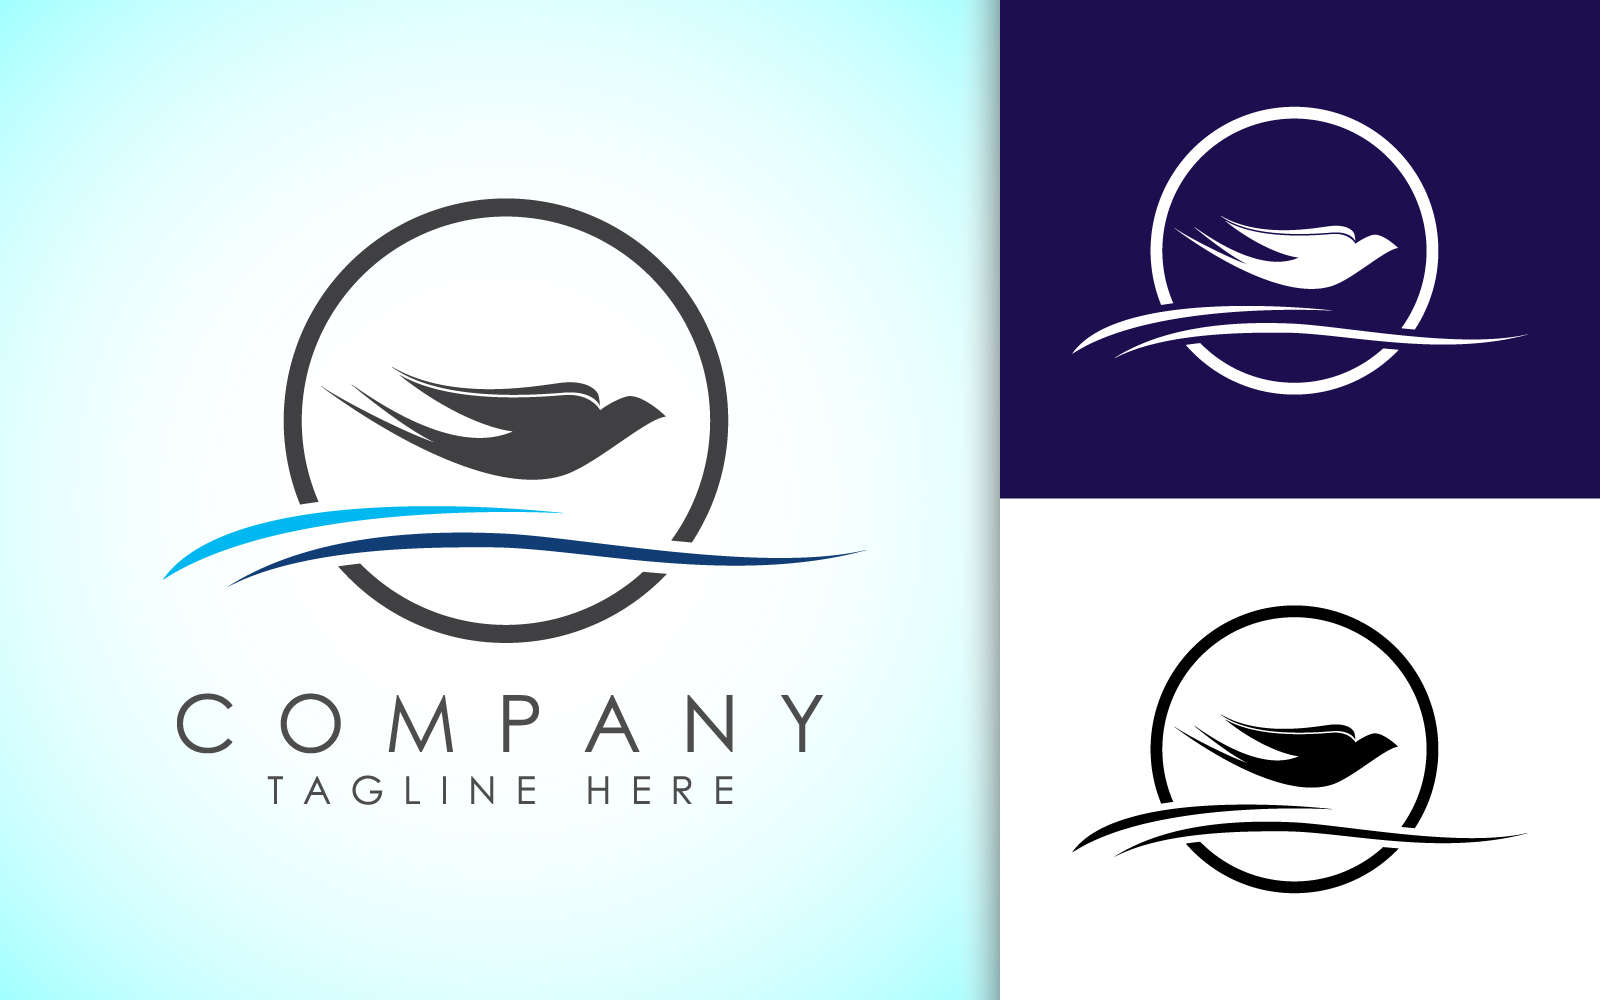 Flying dove logo sign symbol. Bird logo